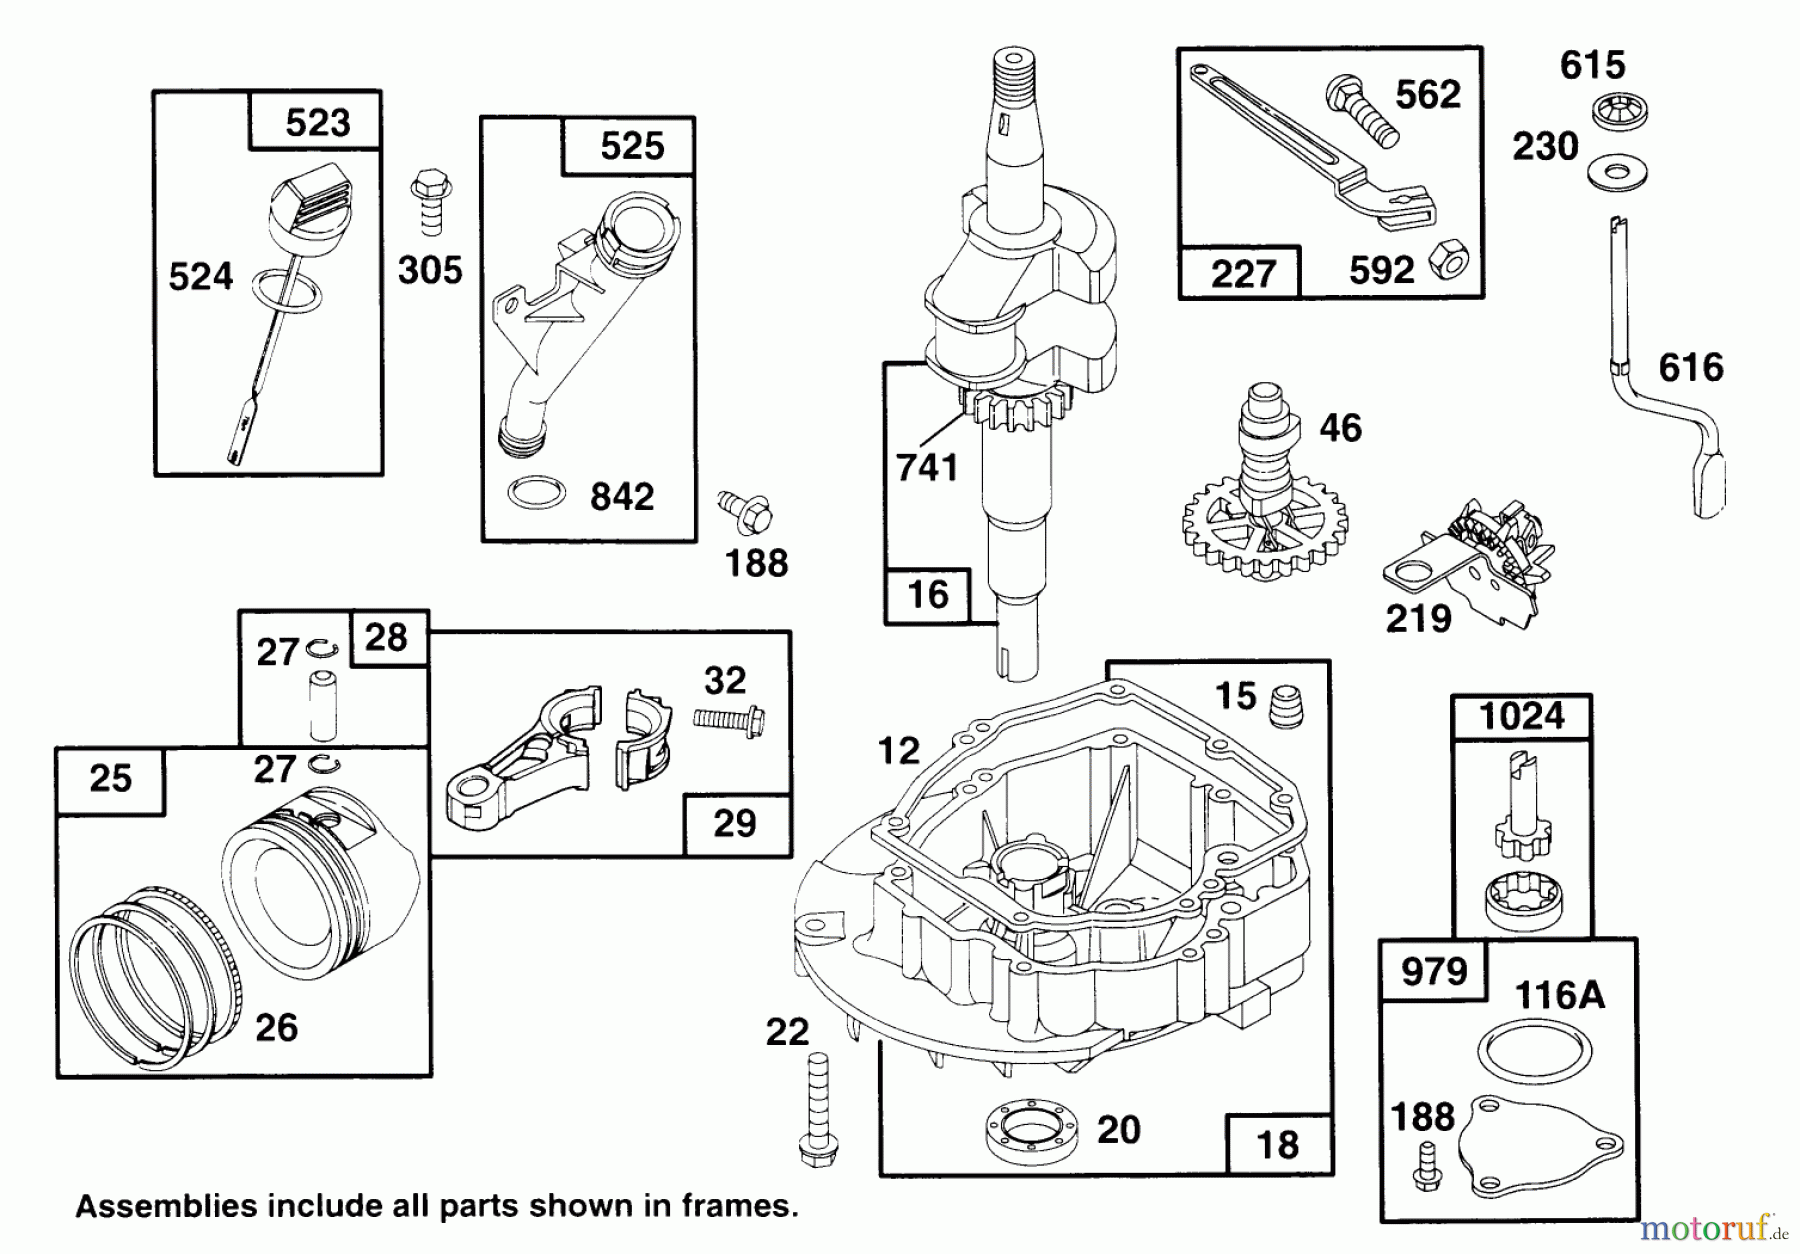  Toro Neu Mowers, Walk-Behind Seite 2 22145 - Toro Lawnmower, 1996 (69000001-69999999) ENGINE GTS 150 #2